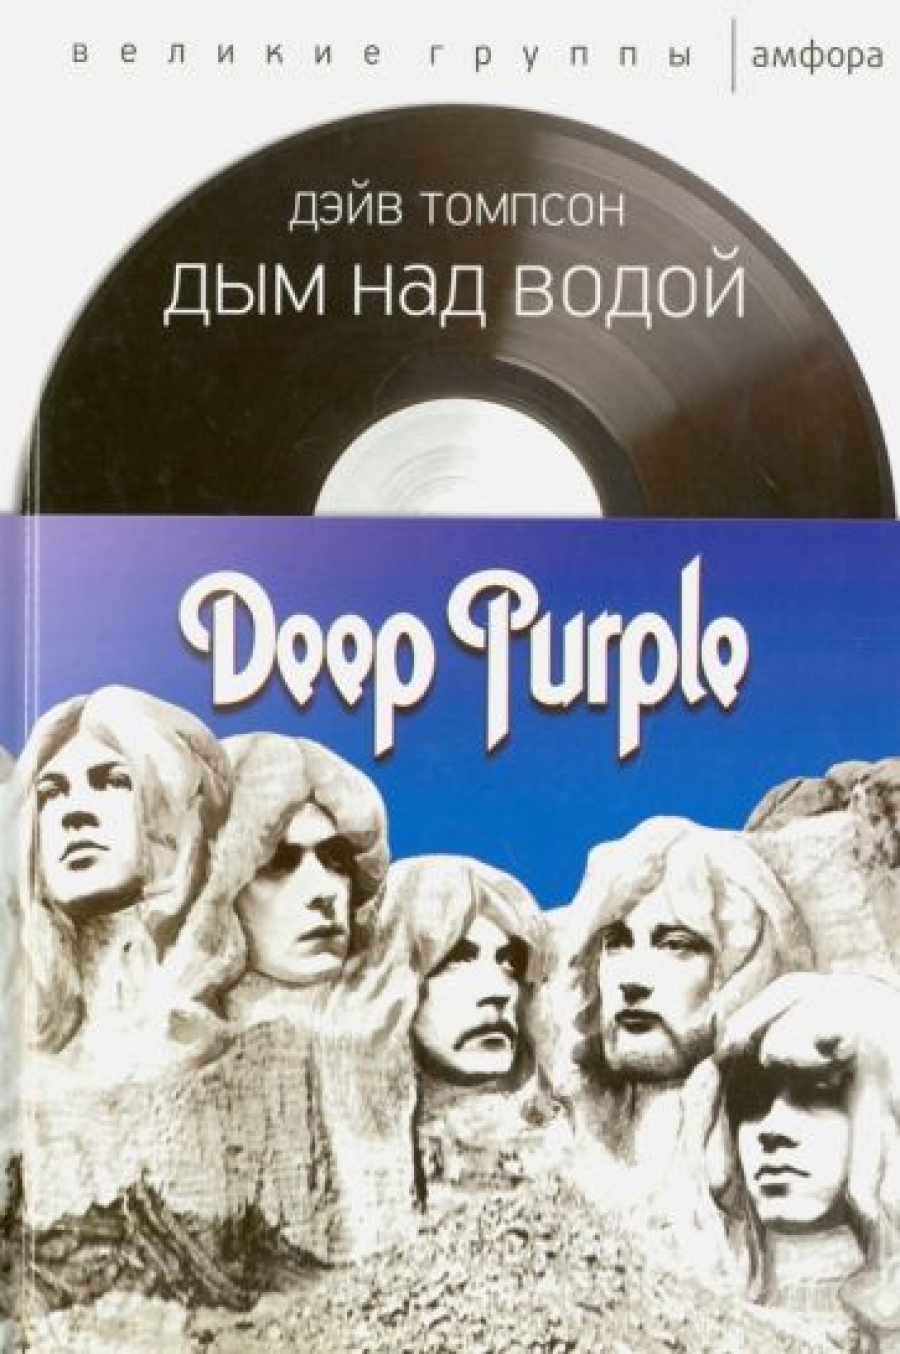 Томпсон Д. Дым над водой. Deep Purple 